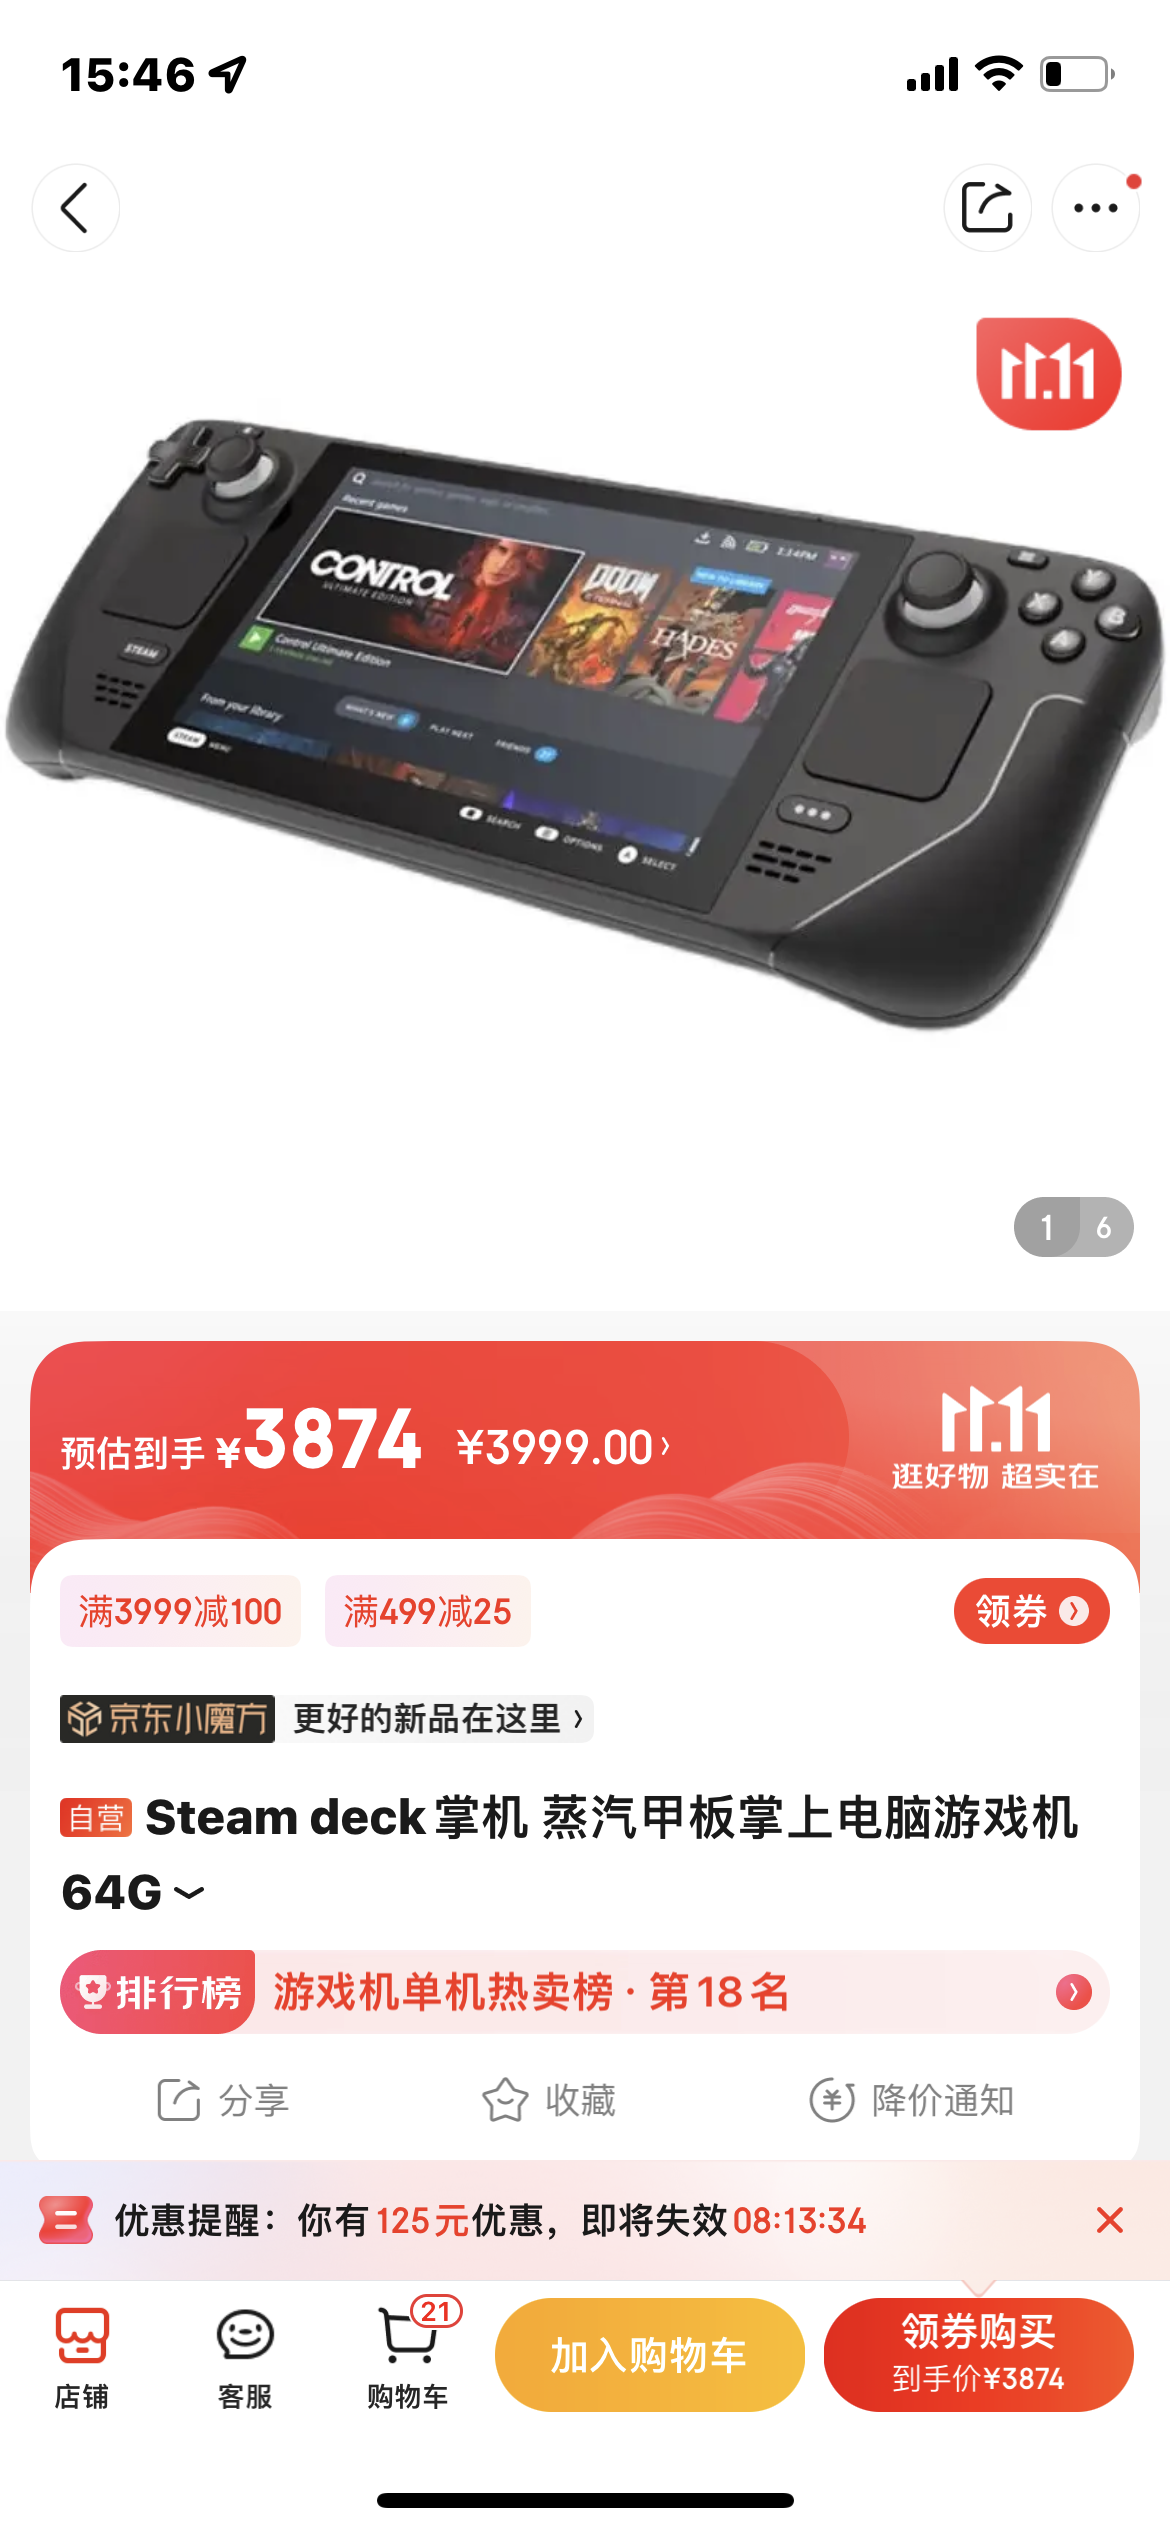 Steam，Deck已上架京东自营：美版64G售价为3999元！ 1%title%